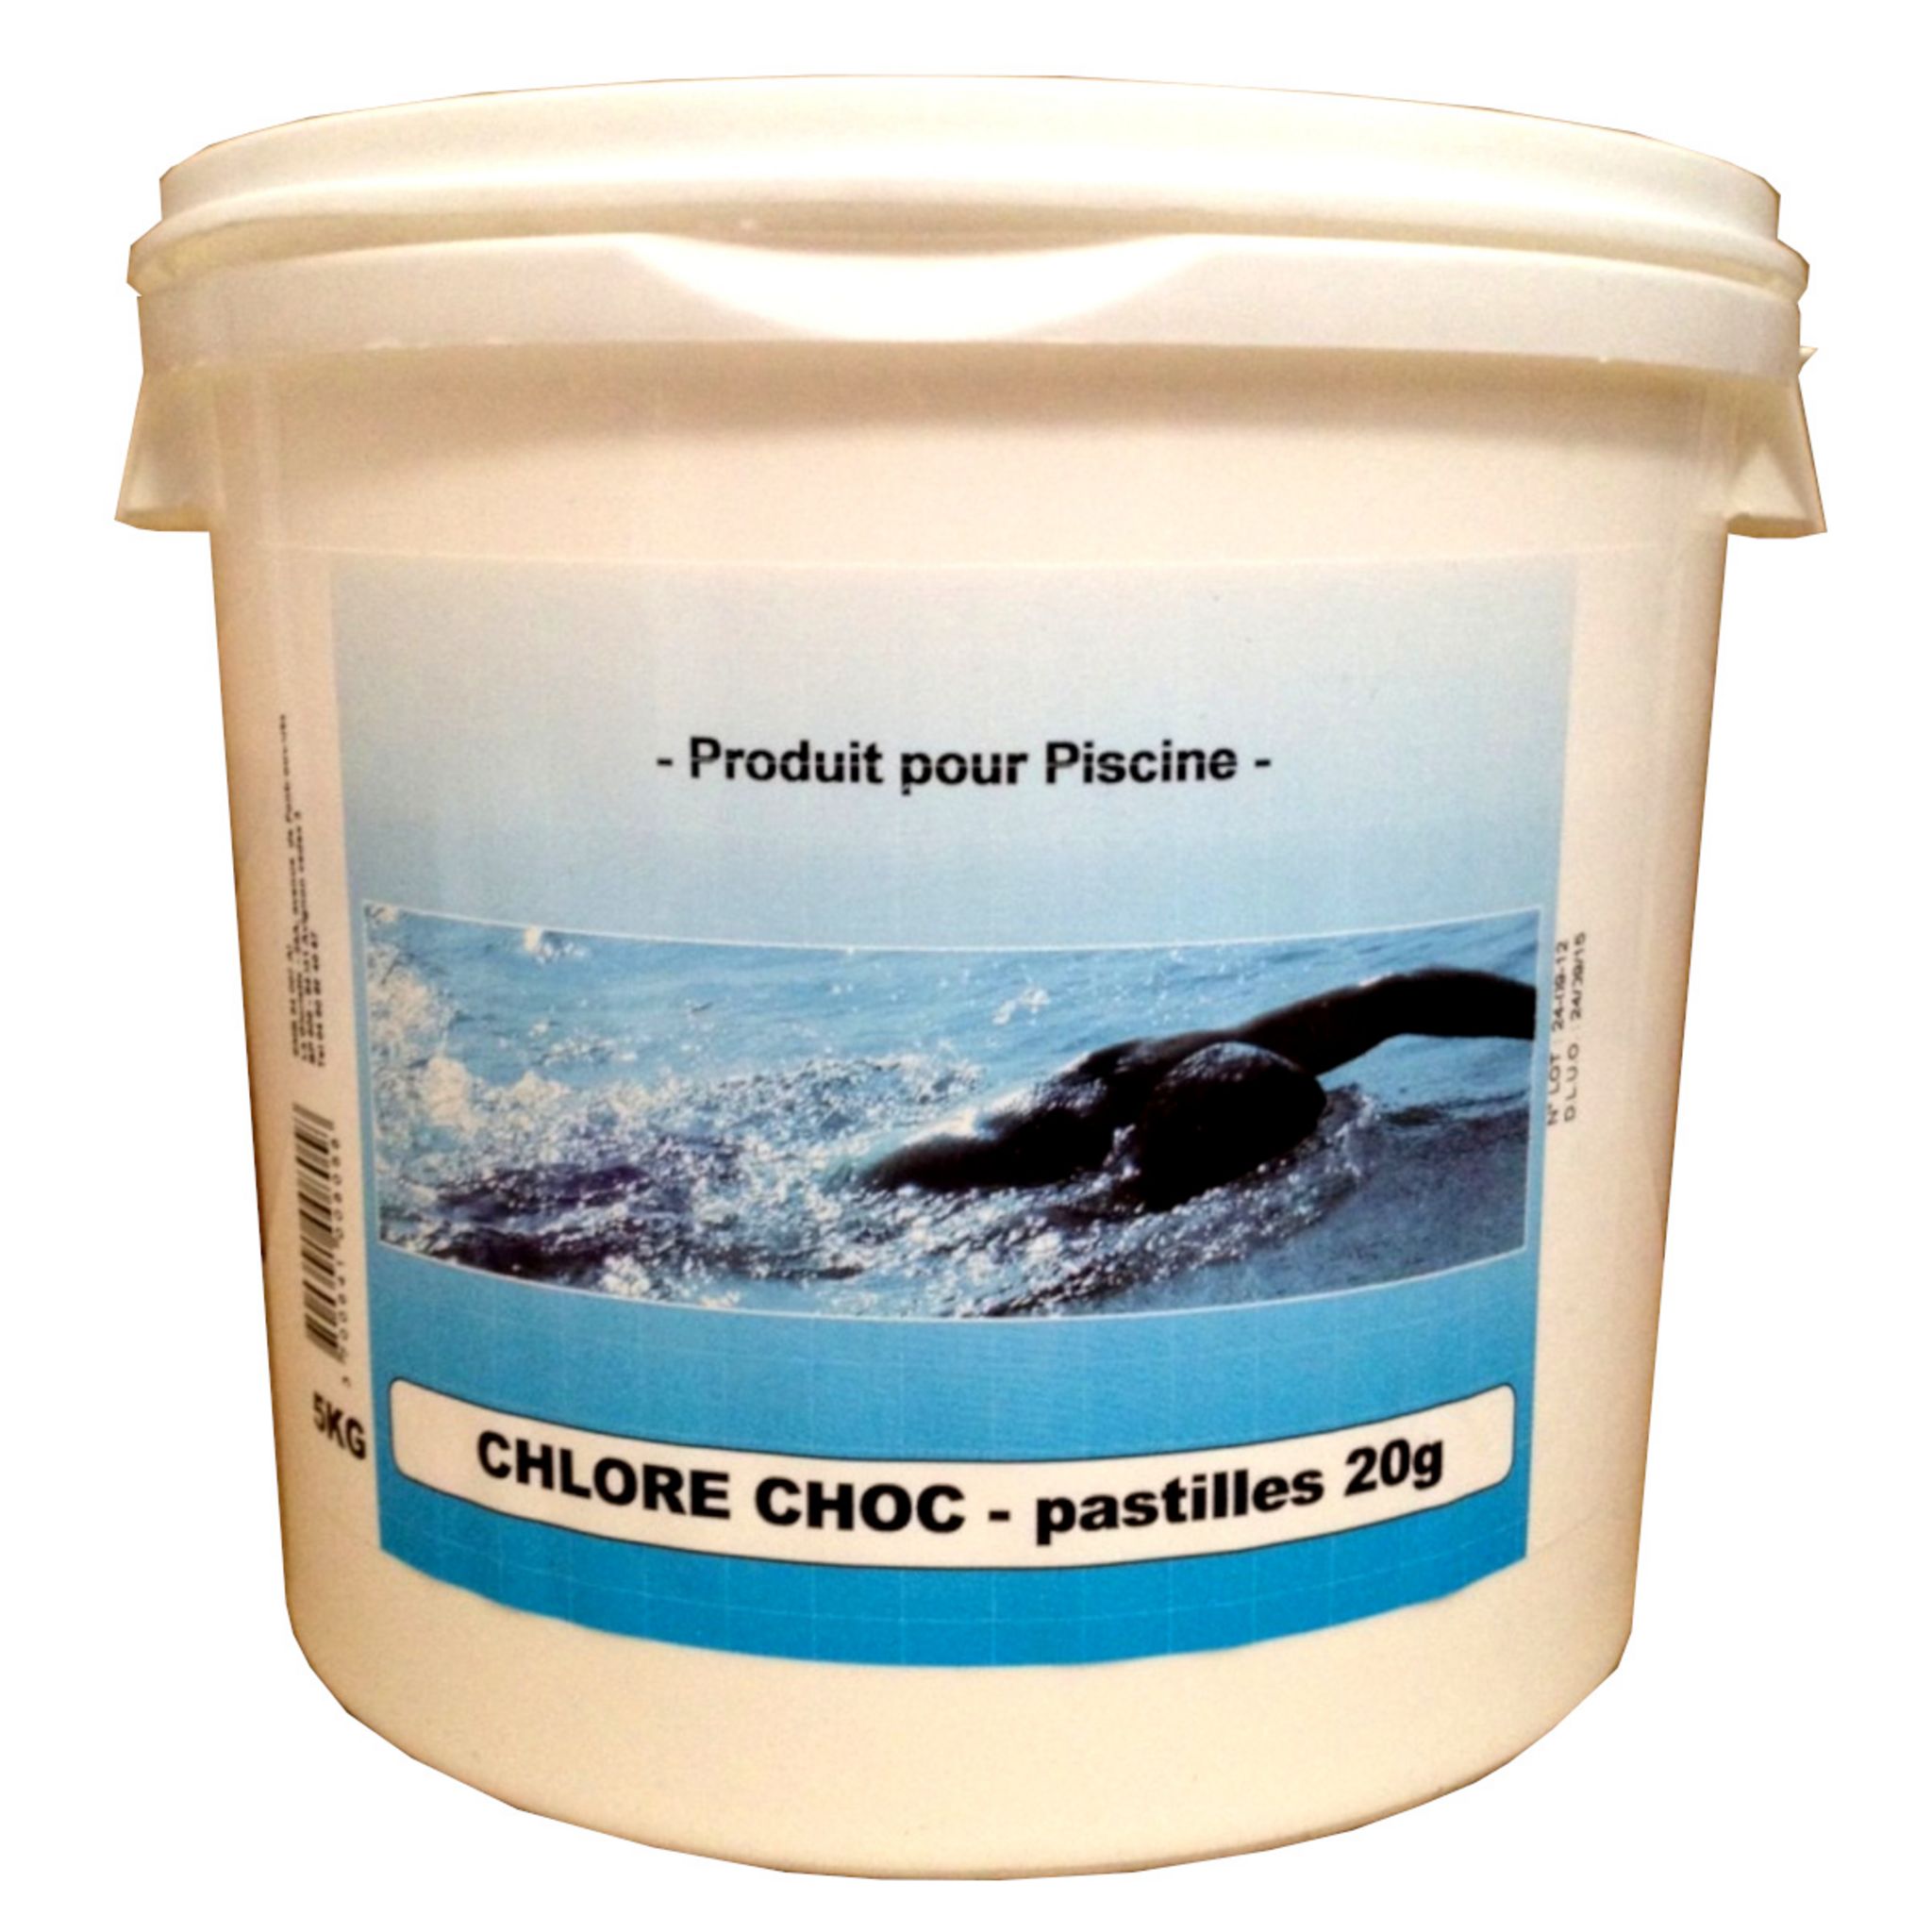 Chlore choc - EDG by Aqualux - Pastilles 20g / Seau de 5 kg Aqualux